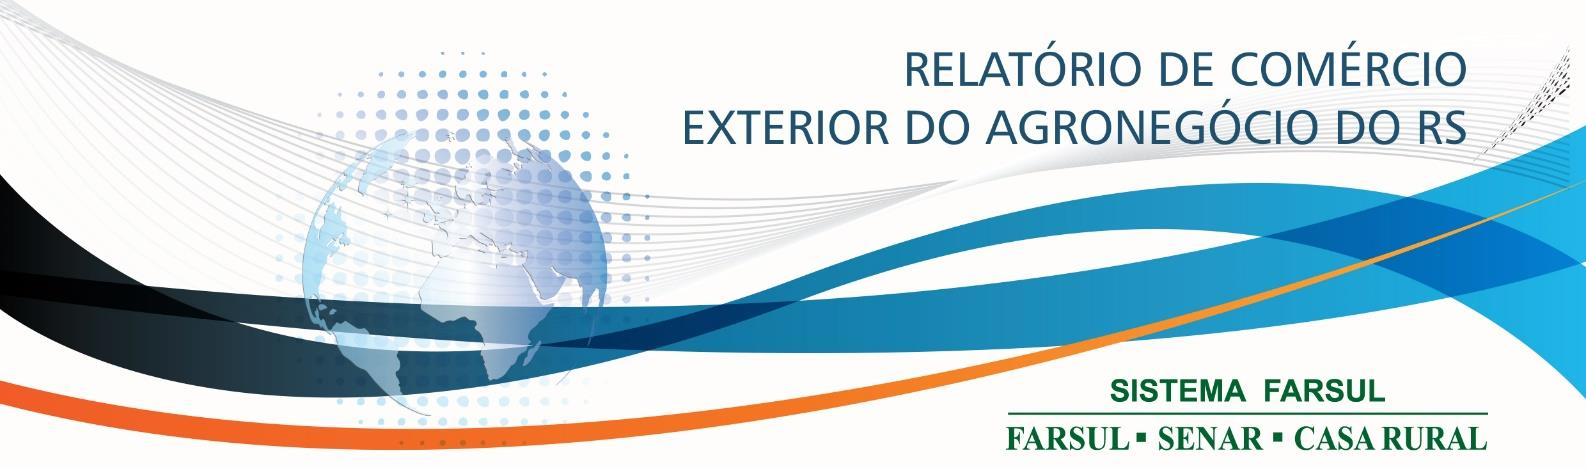 Este relatório tem por objetivo apresentar os principais números referentes ao comércio internacional do agronegócio do Rio Grande do Sul no mês de dezembro de 2015.